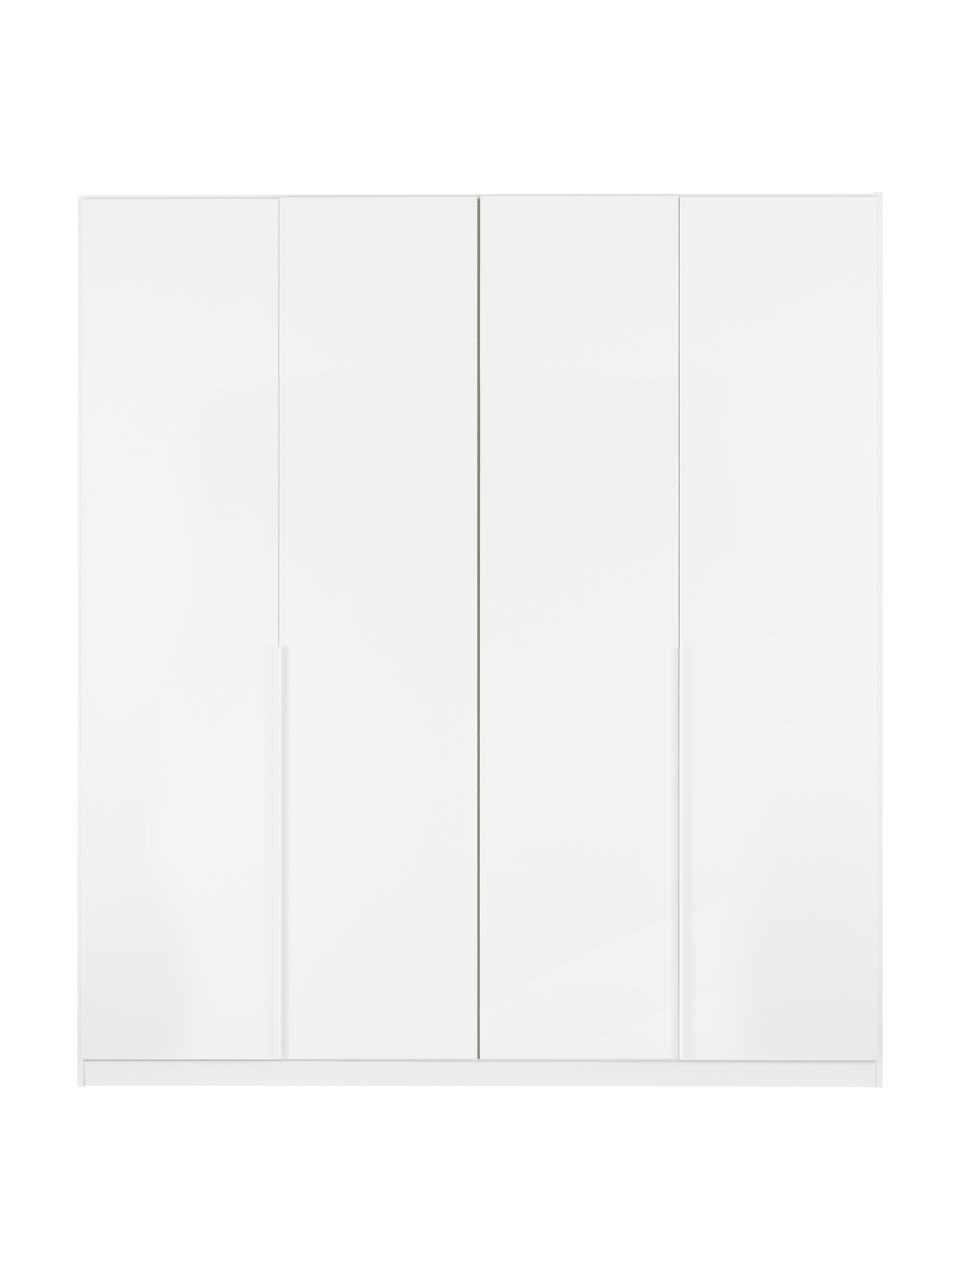 Drehtürenschrank Mia in Weiß, 4-türig, Holzwerkstoff, beschichtet, Weiß, B 181 x H 210 cm